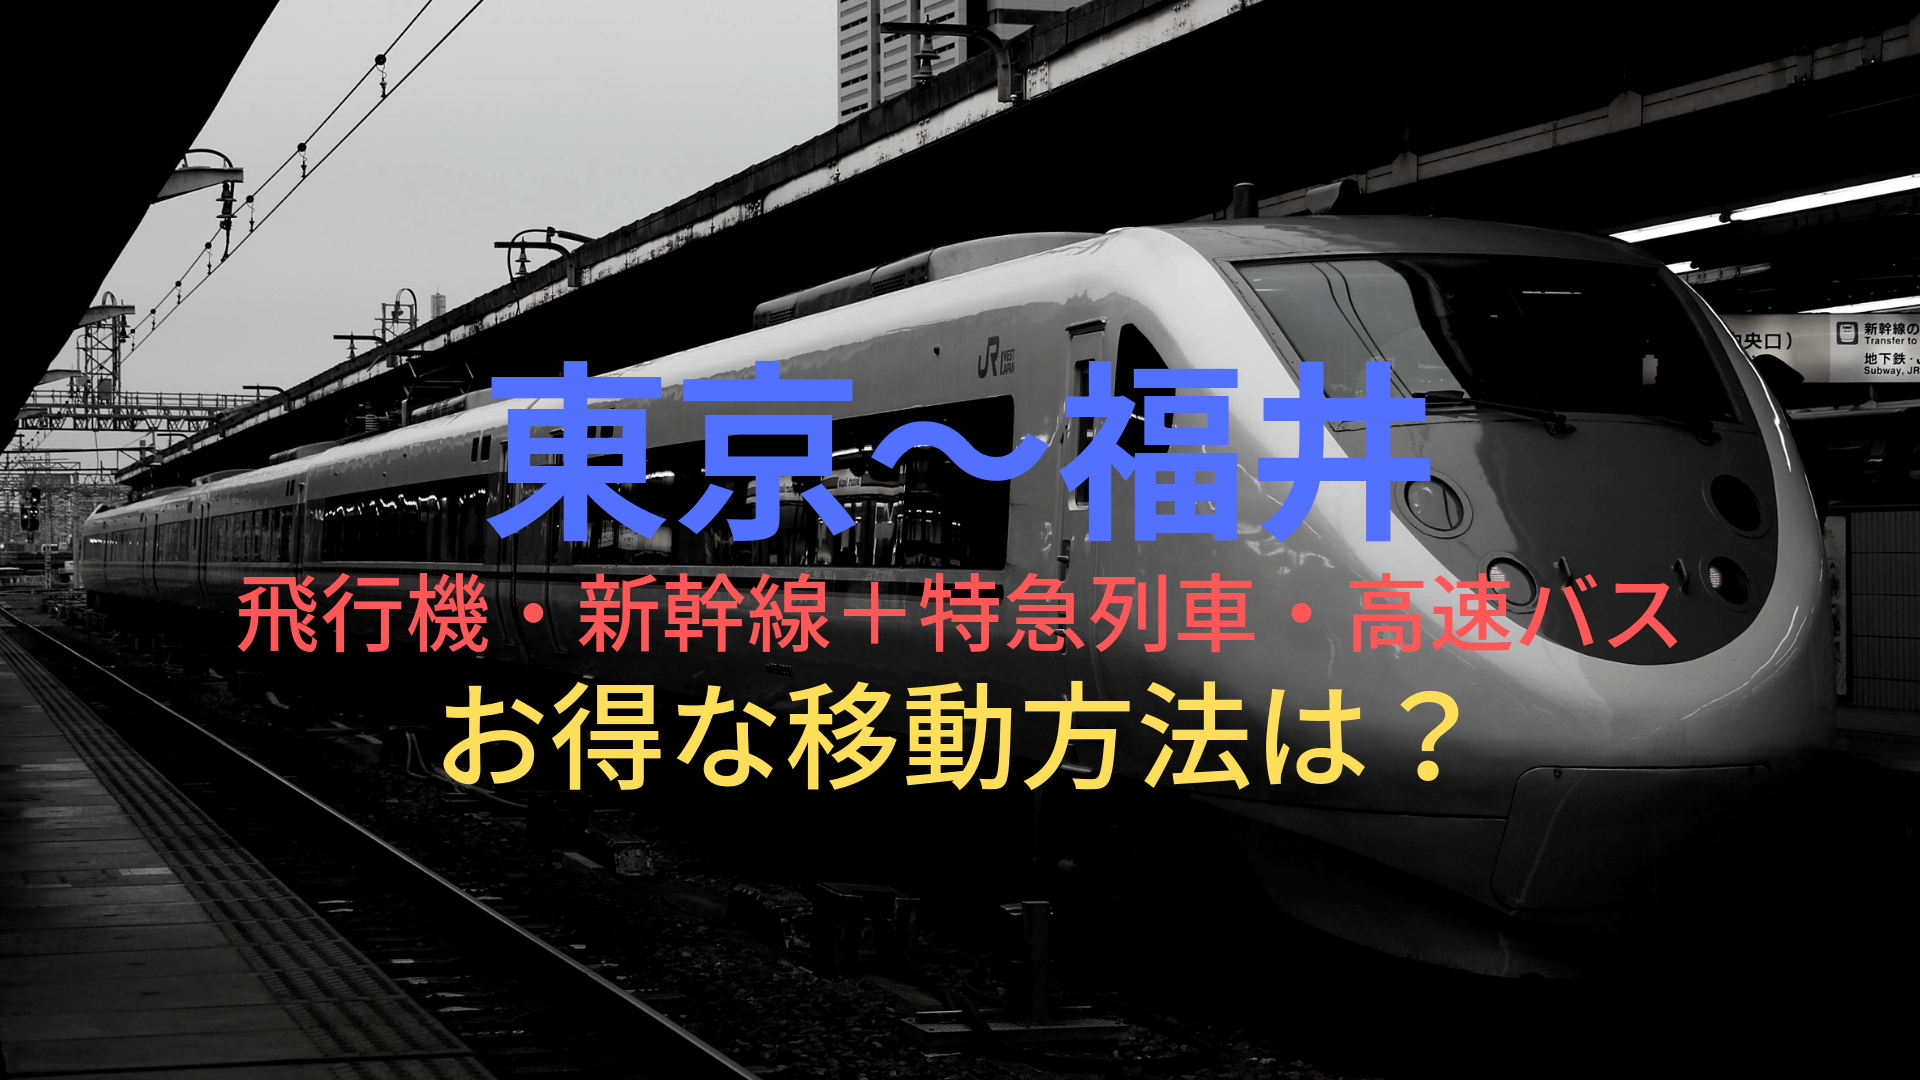 東京 福井 3000円 格安で移動する方法は 飛行機 新幹線 特急列車 高速バスをそれぞれ比較 ばしたく交通